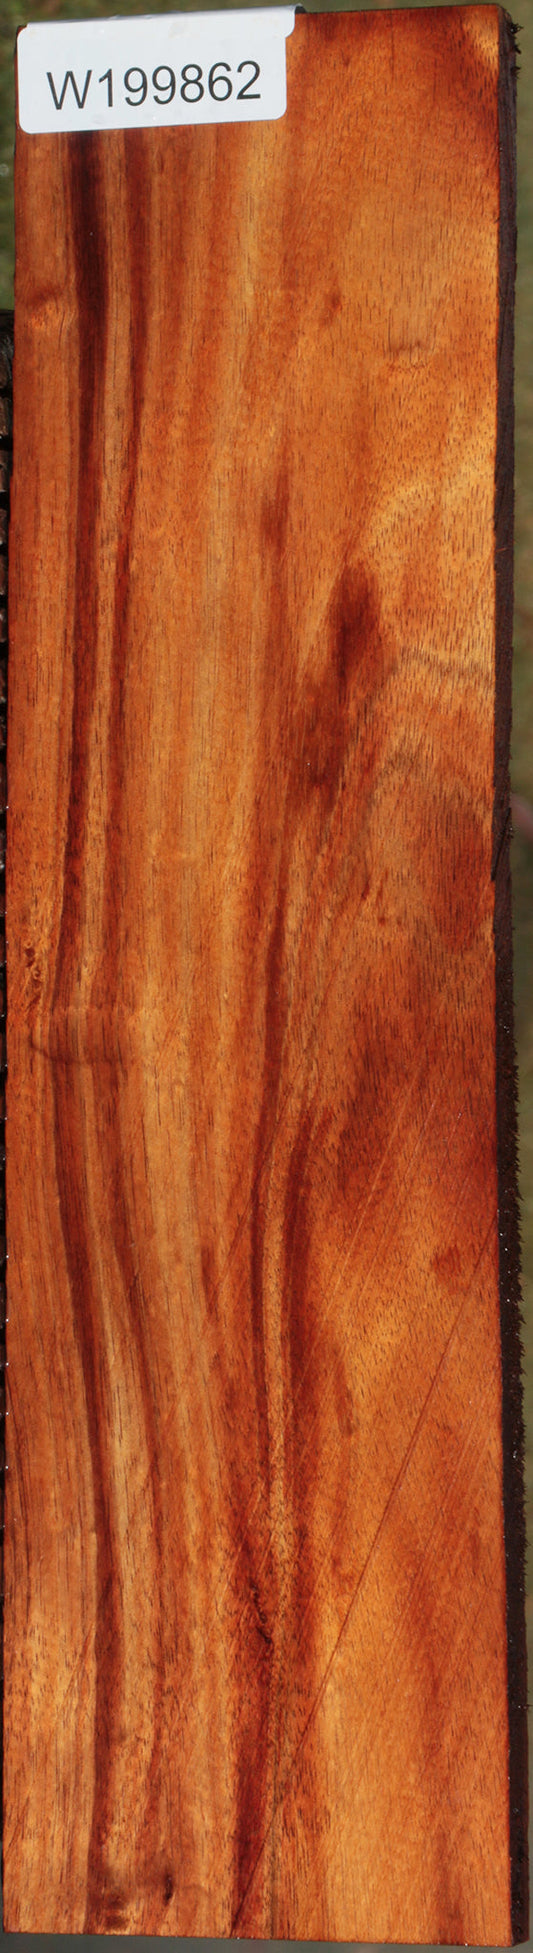 Hawaiian Koa Lumber